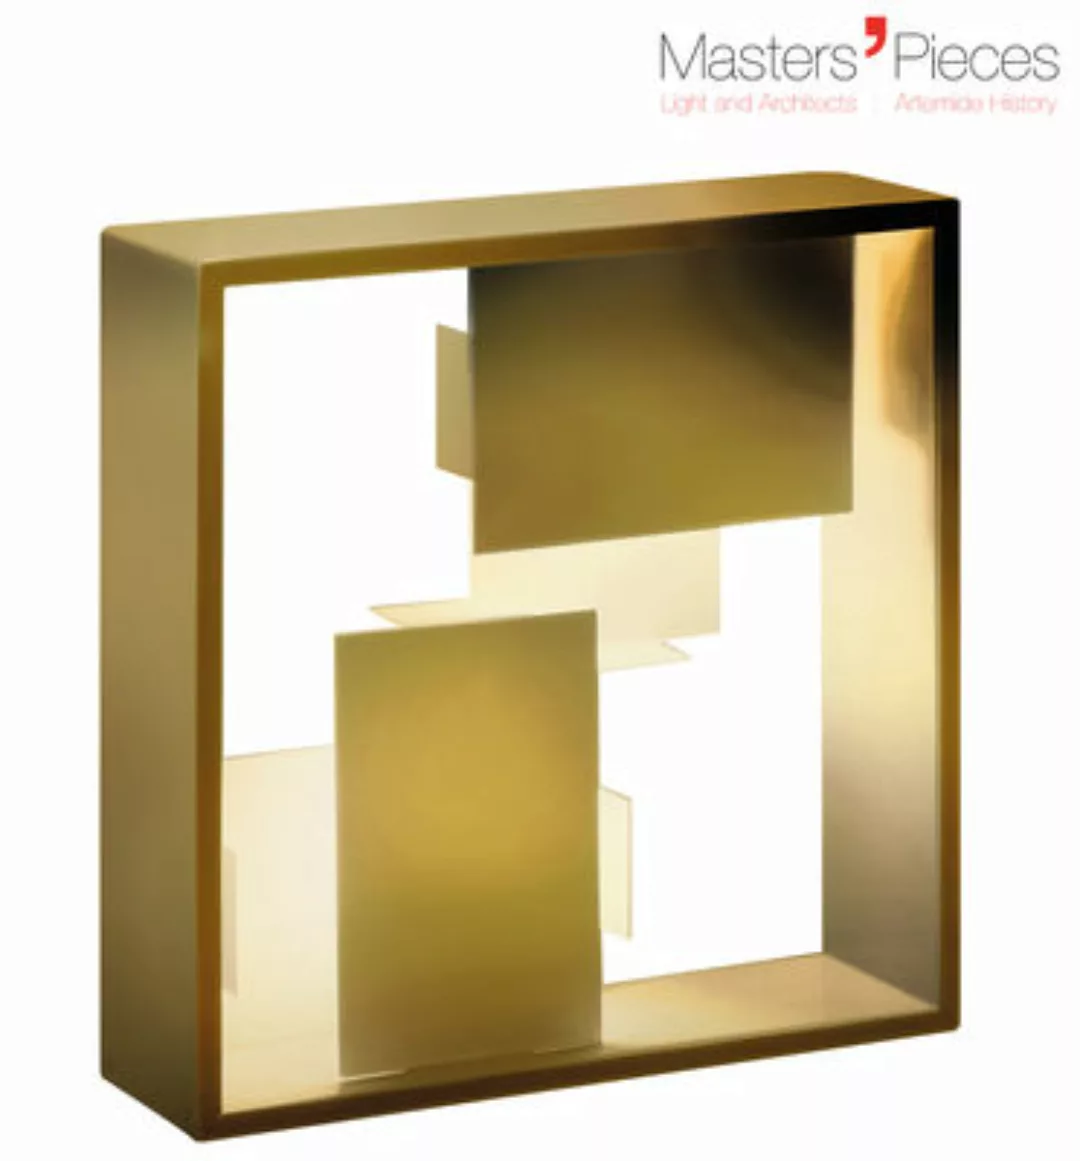 Tischleuchte Masters' Pieces - Fato metall gold / Neuauflage des Originals günstig online kaufen